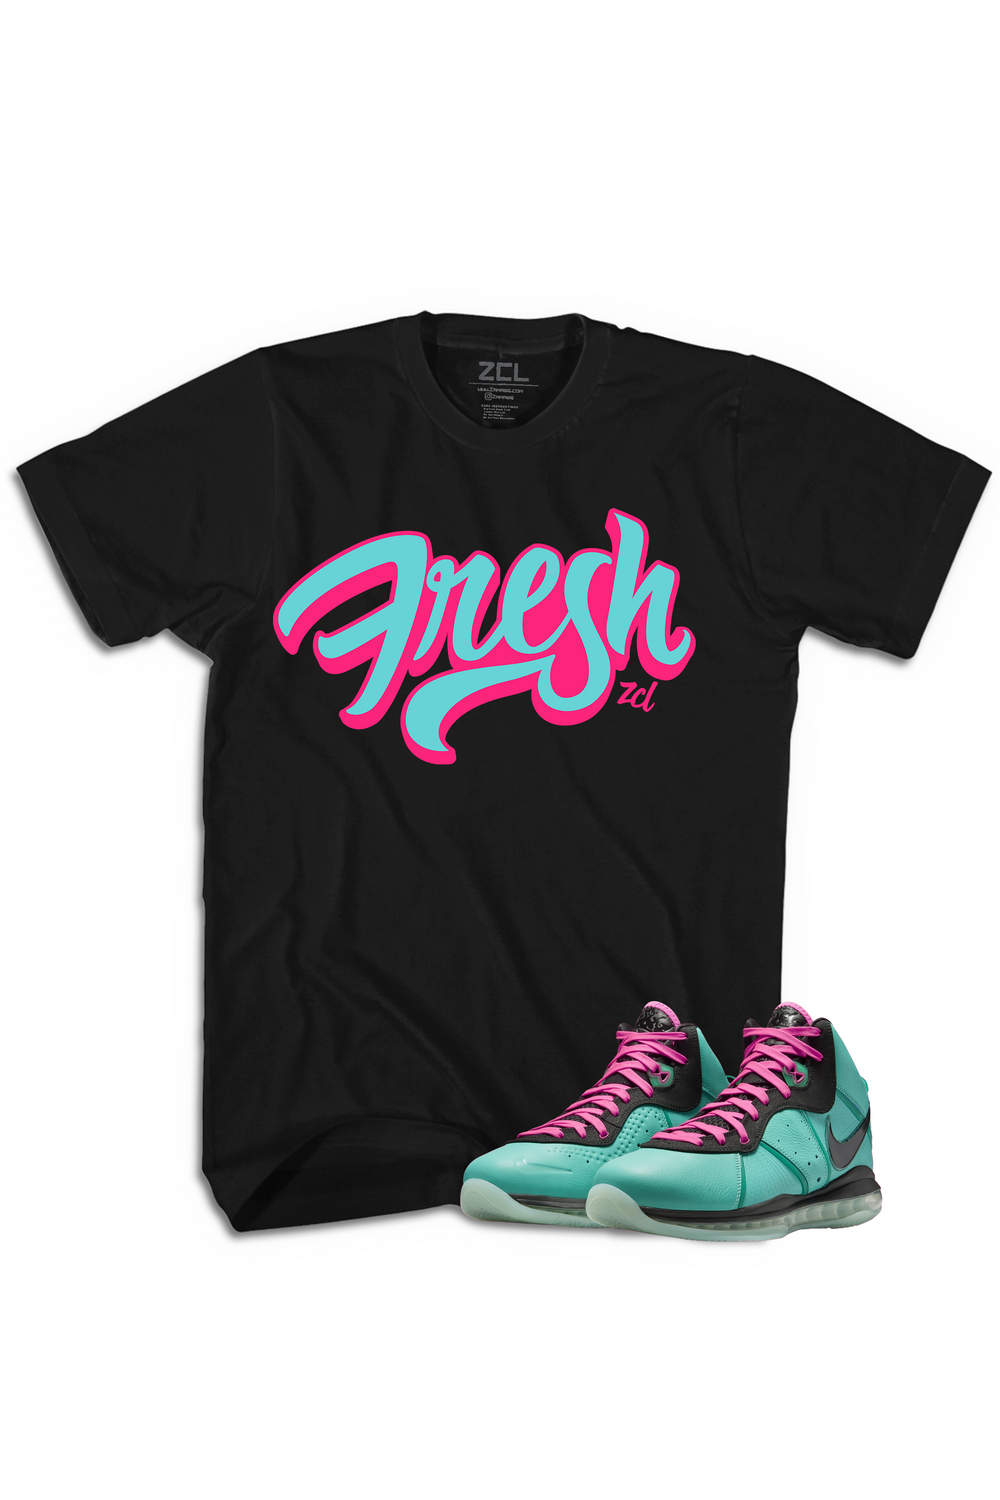 Nike Lebron 8 "Fresh" Tee South Beach 2021 - Zamage